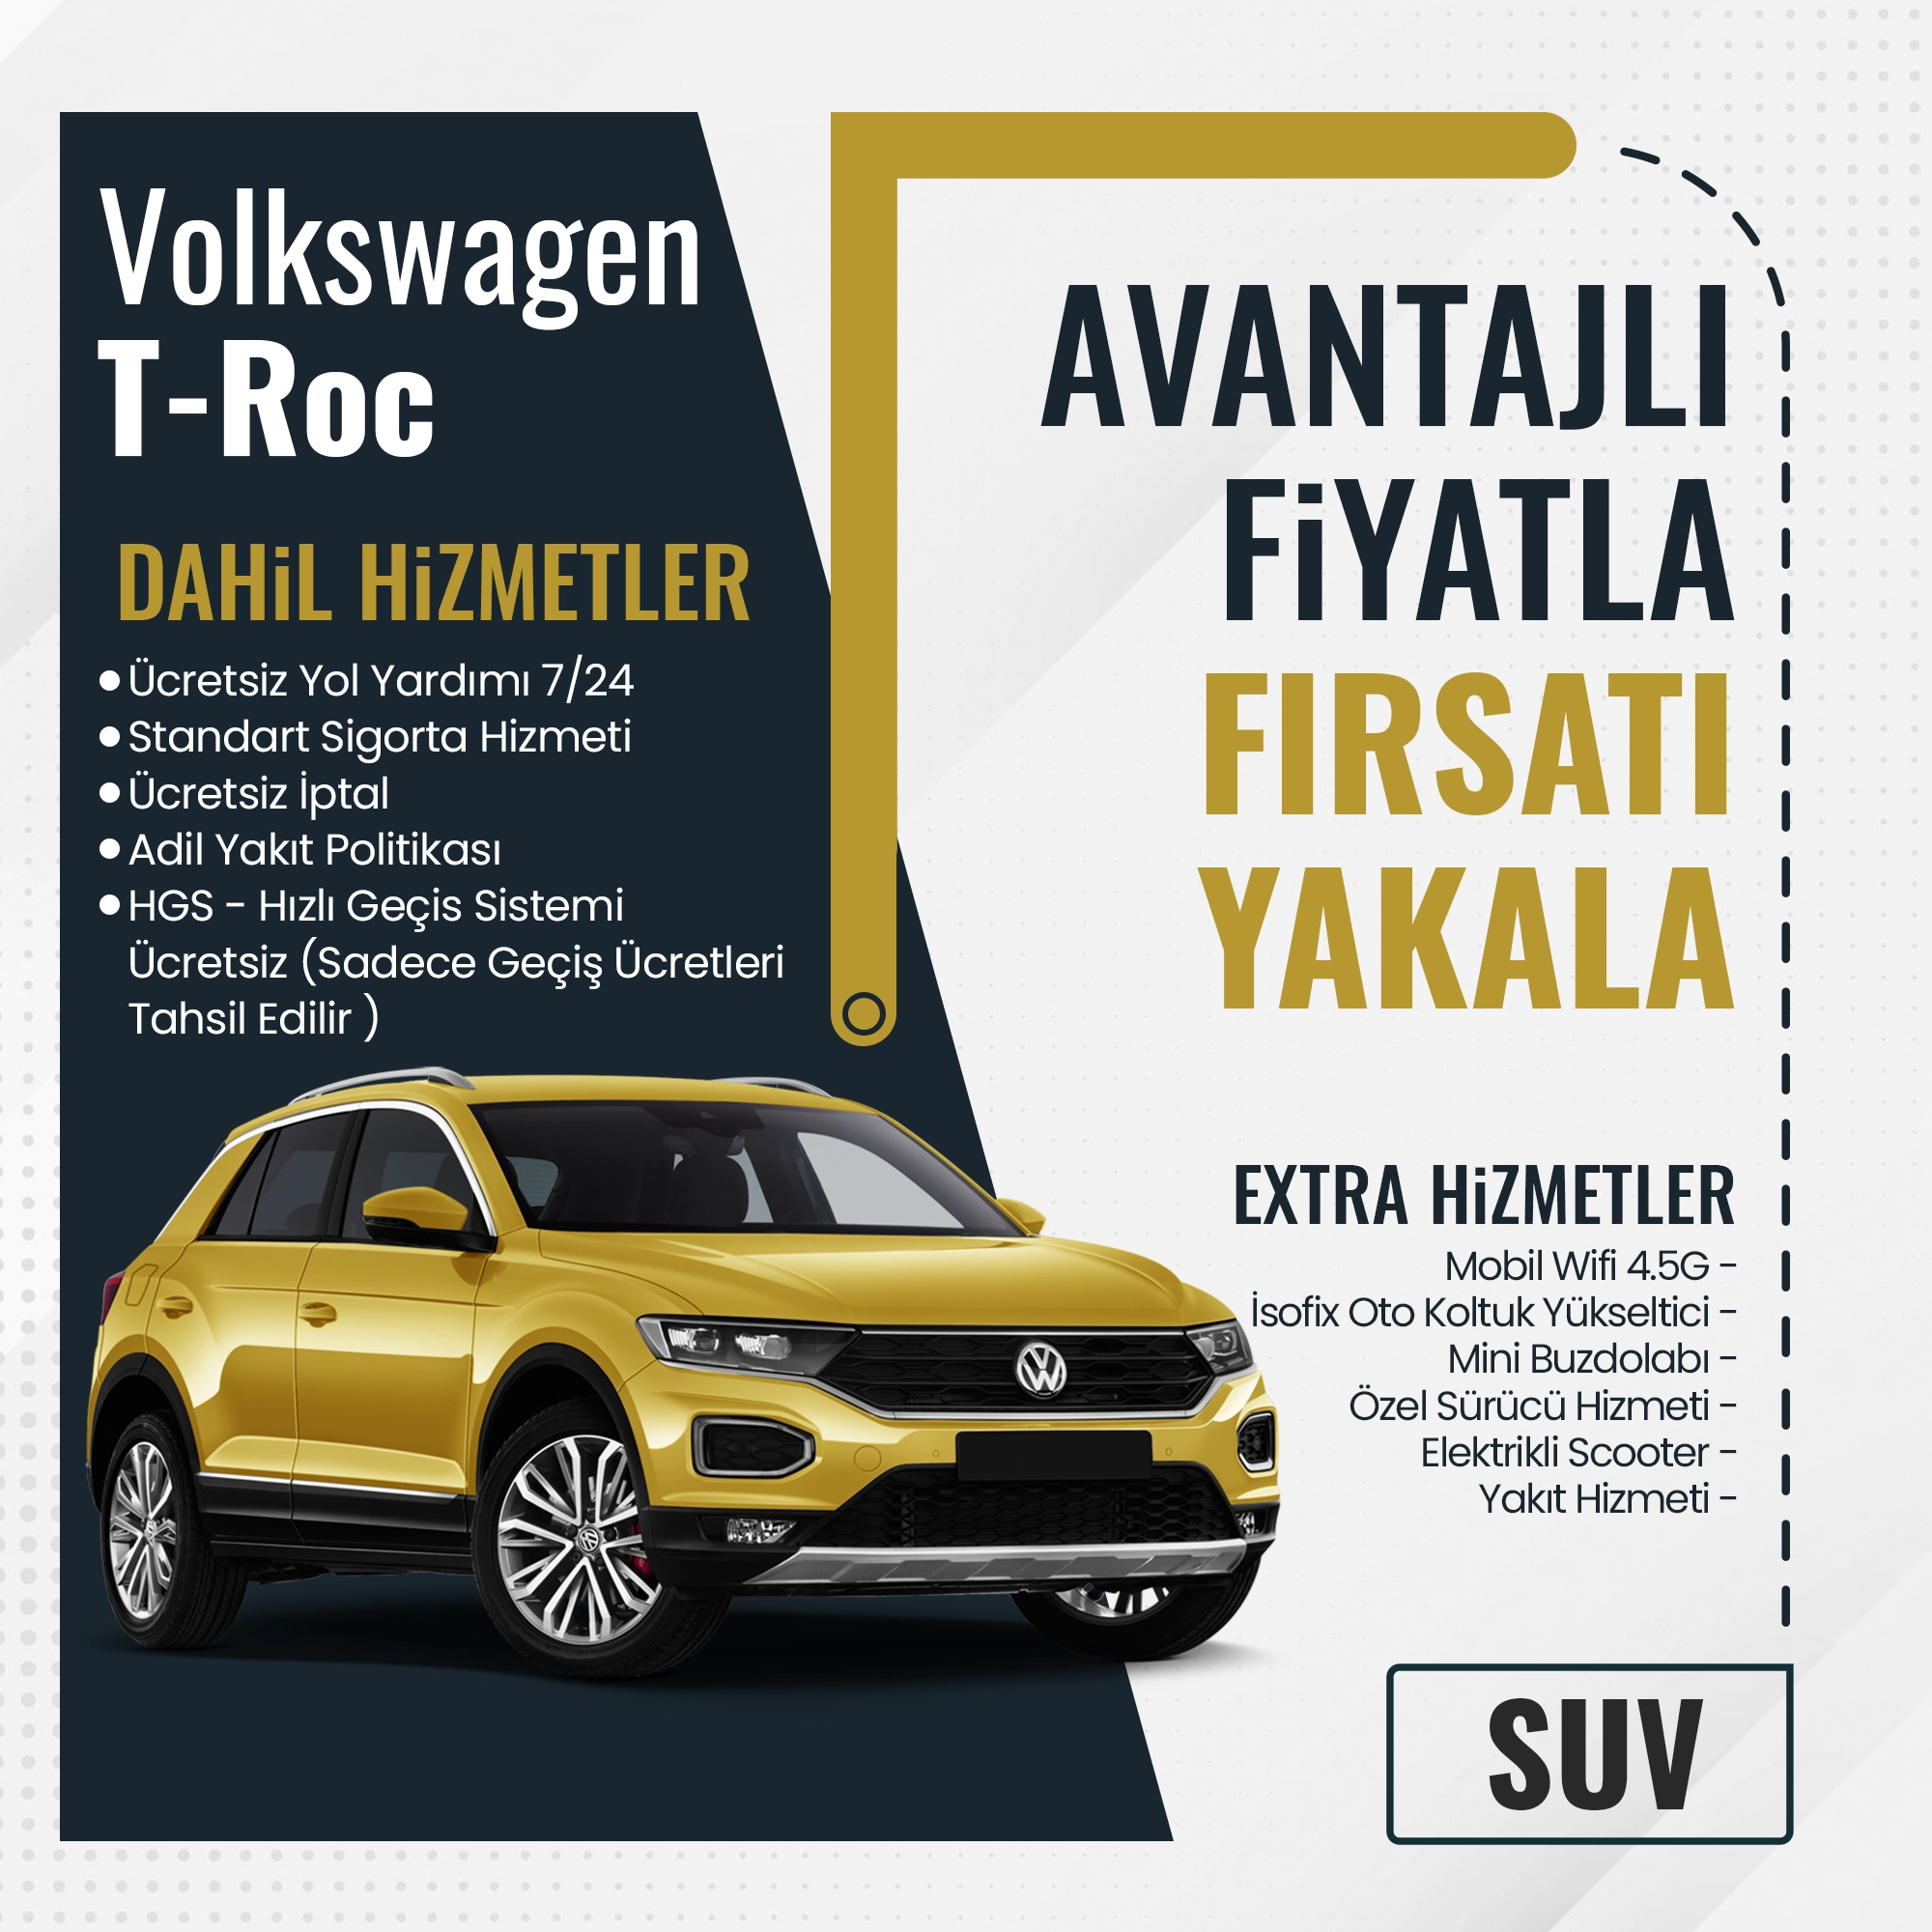 Не упустите возможности Volkswagen T-Roc в нашей декабрьской кампании